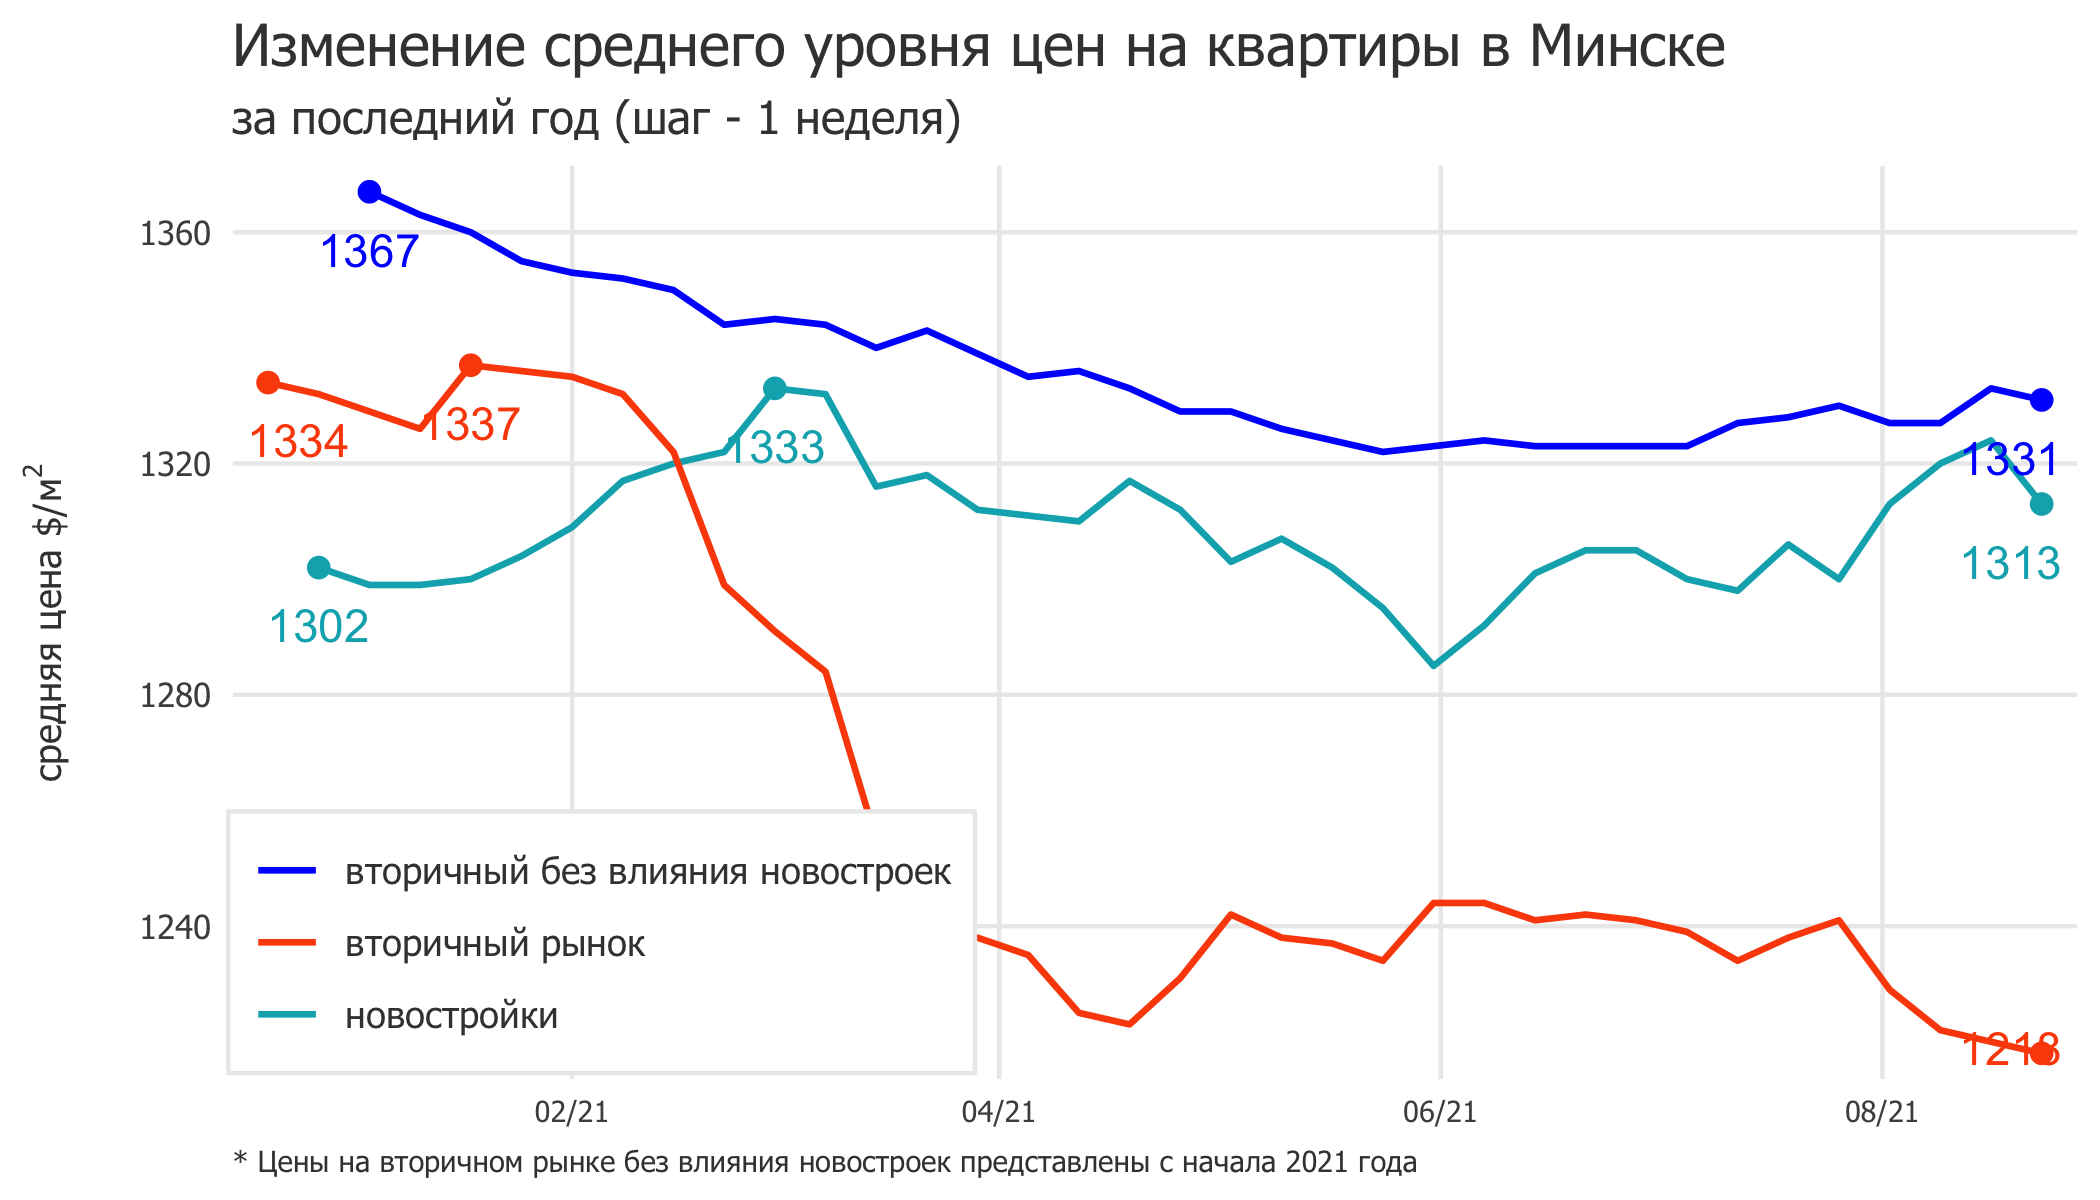 Мониторинг цен предложения квартир в Минске за 16-23 августа 2021 года